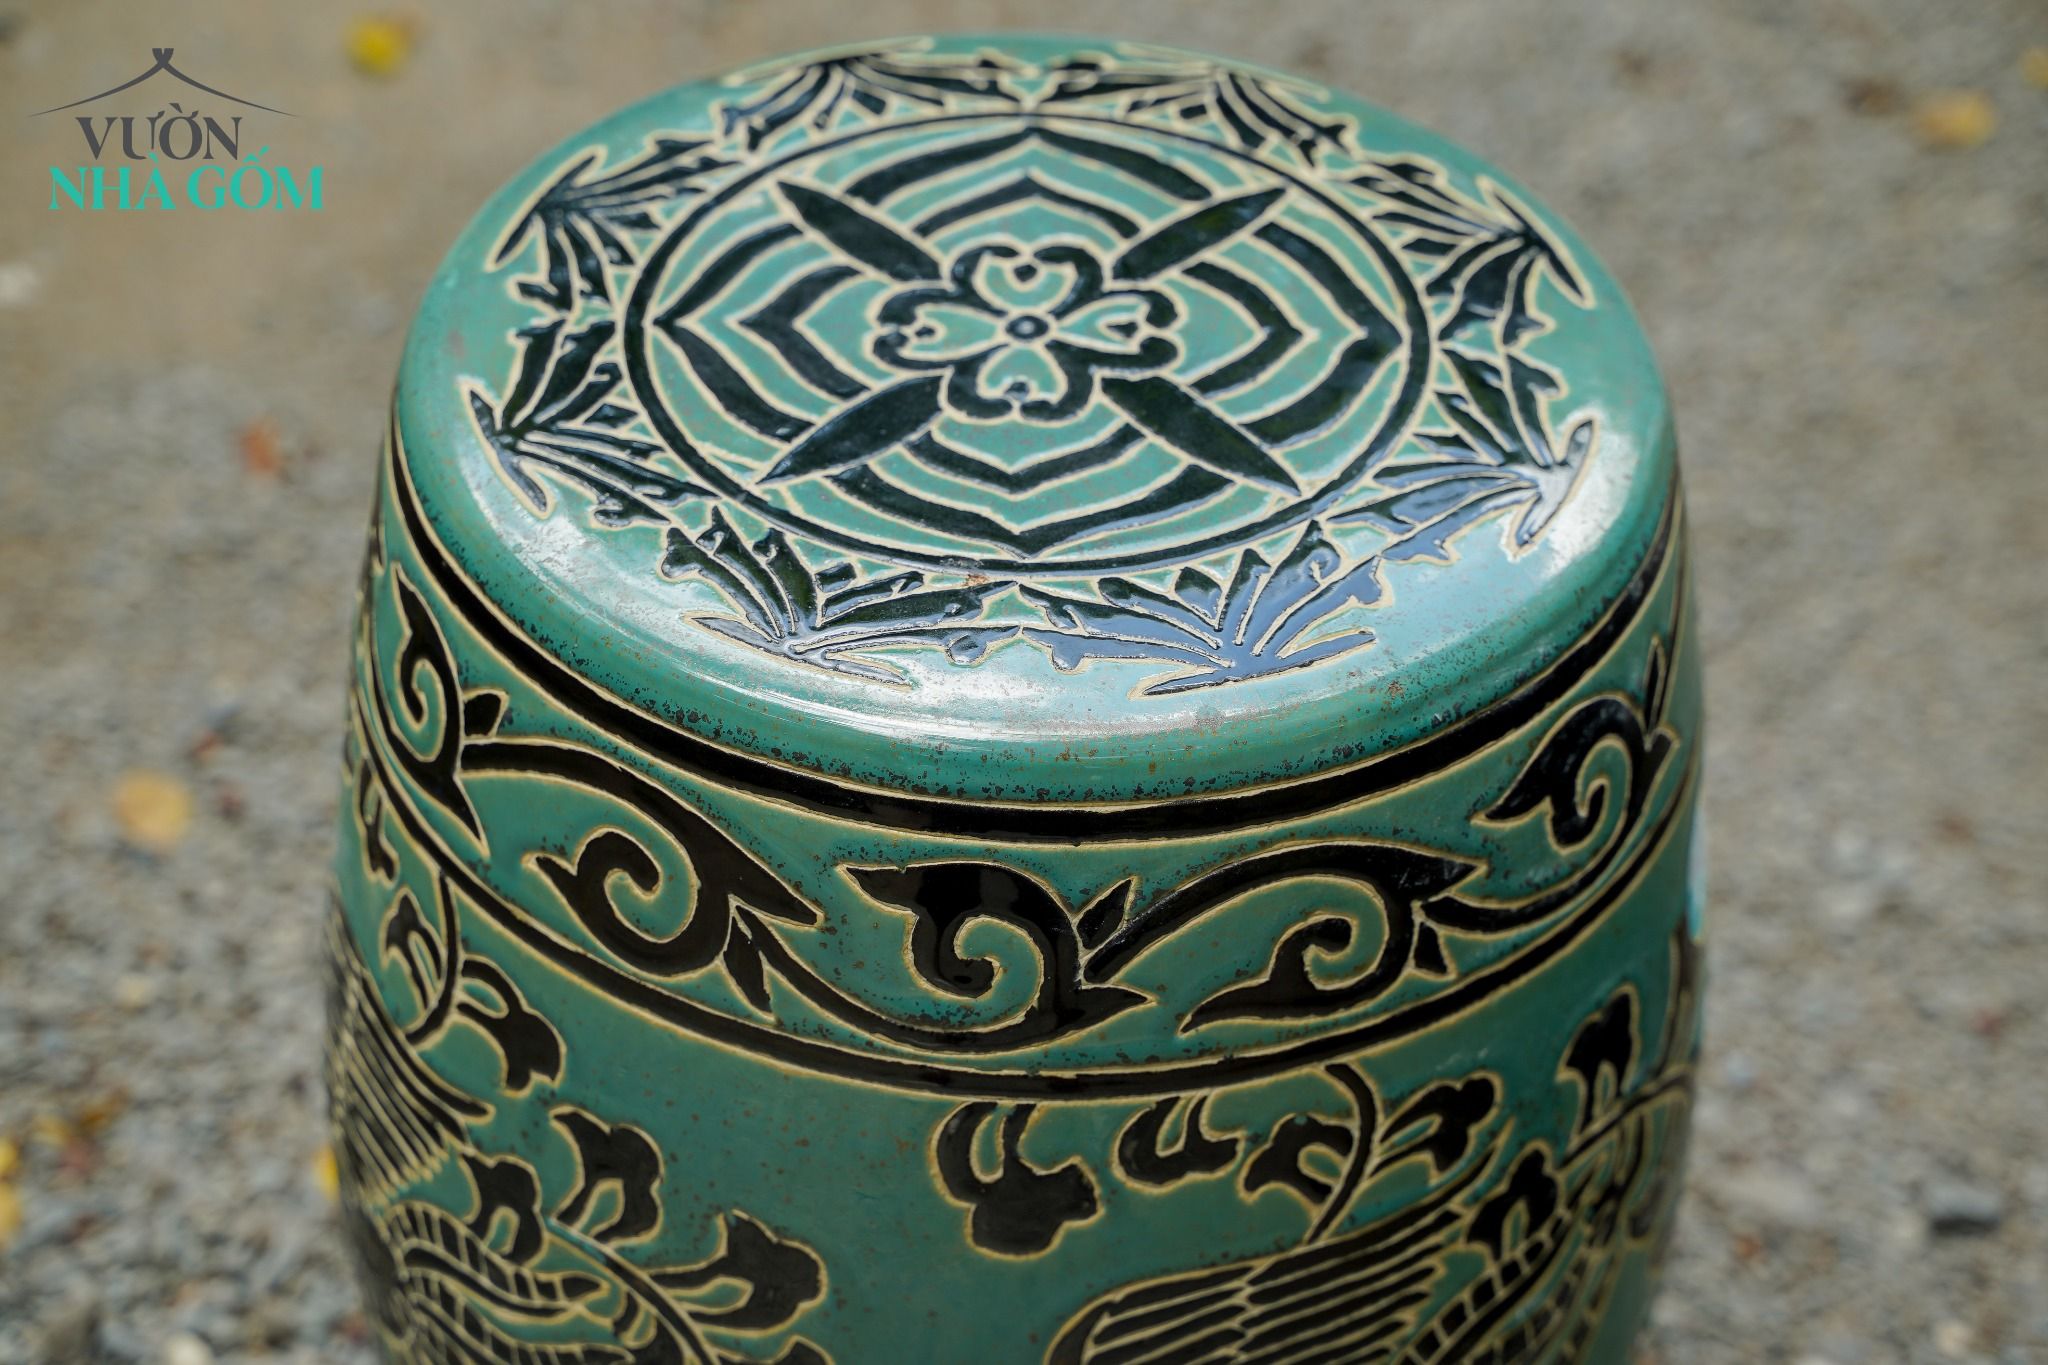  Đôn khắc họa tiết Phụng Vũ xanh đồng, gốm mỹ nghệ Nam bộ, C50 x R30cm 